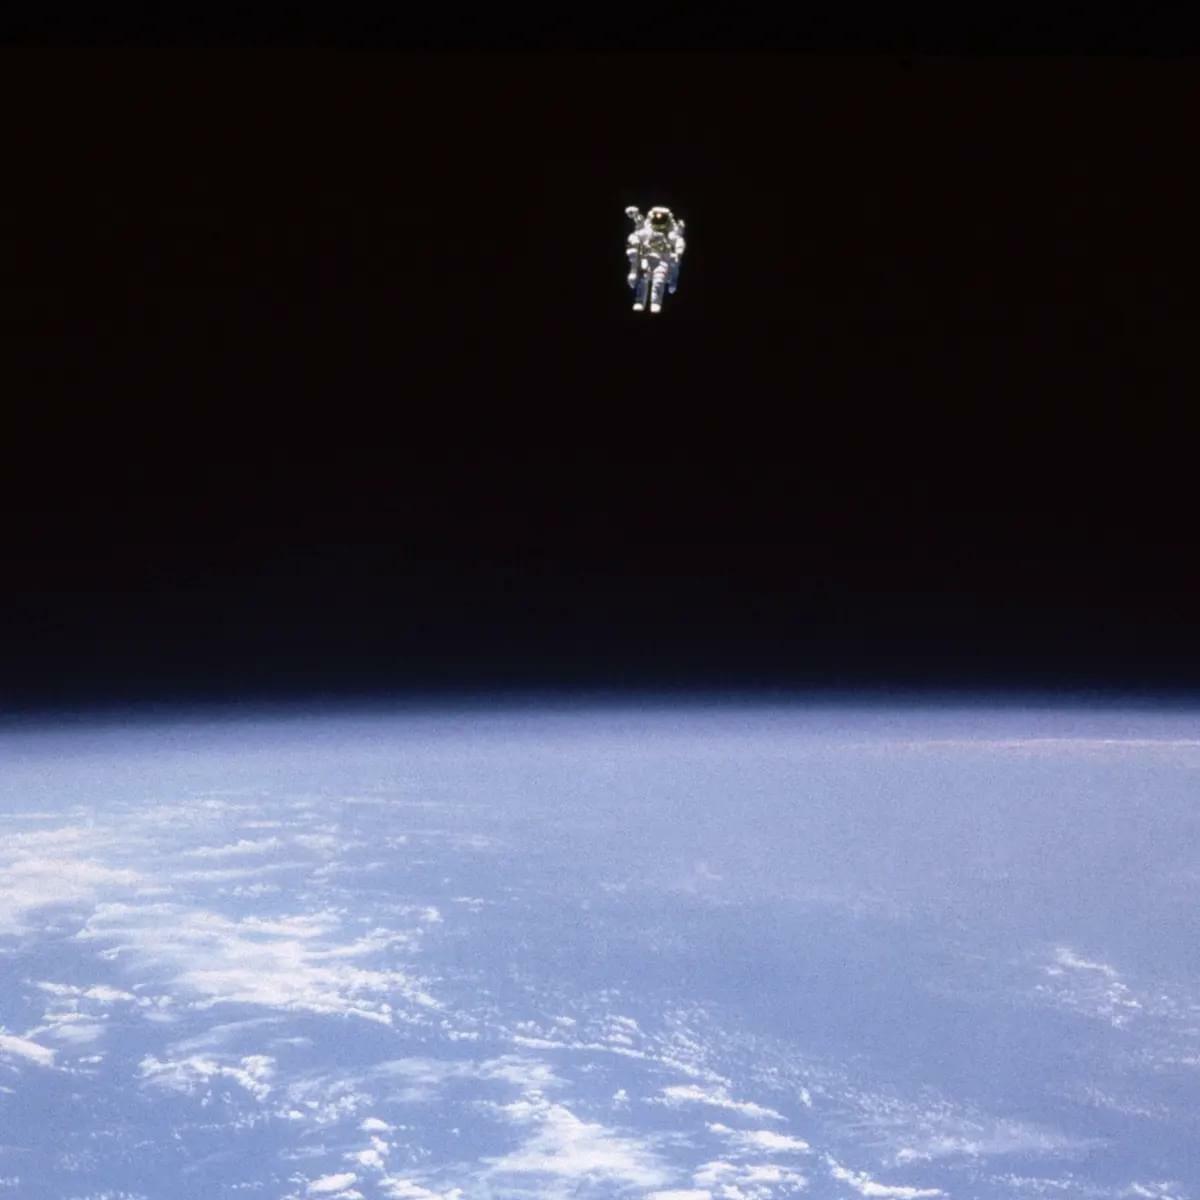 Tu parles de paumes en sueur. L’astronaute Bruce McCandless effectue la première sortie dans l’espace sans être attaché.